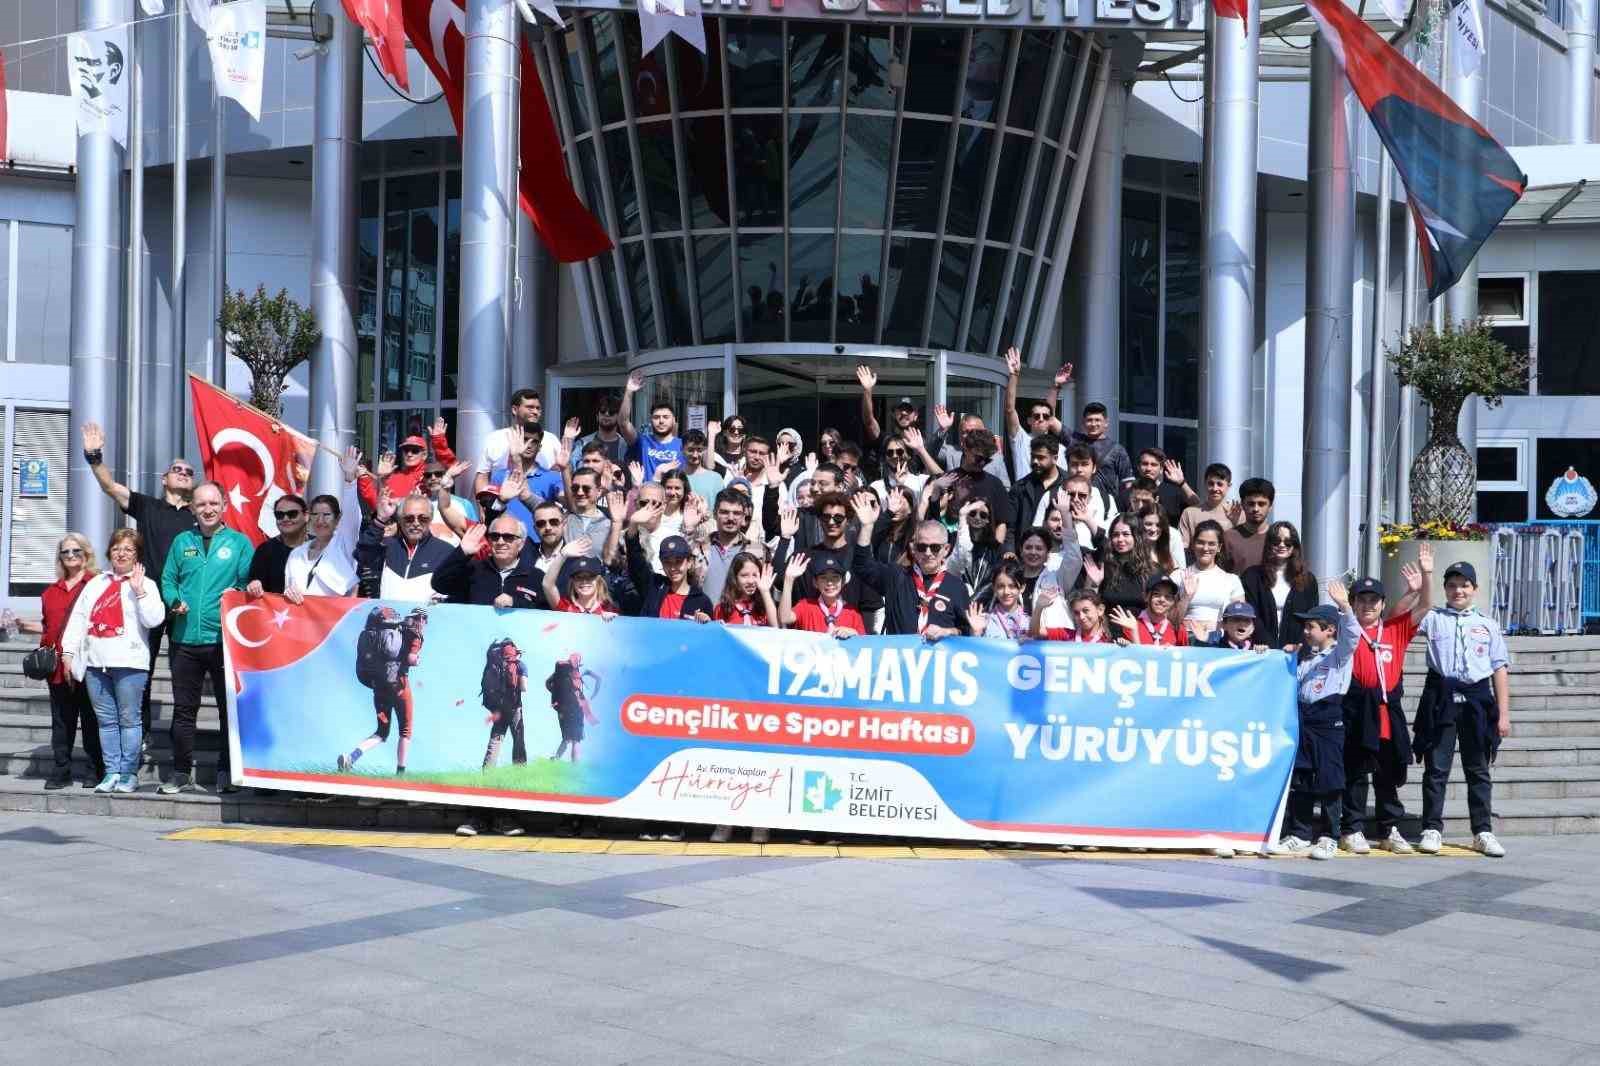 İzmitli gençler 19 Mayıs Gençlik Yürüyüşünde buluştu